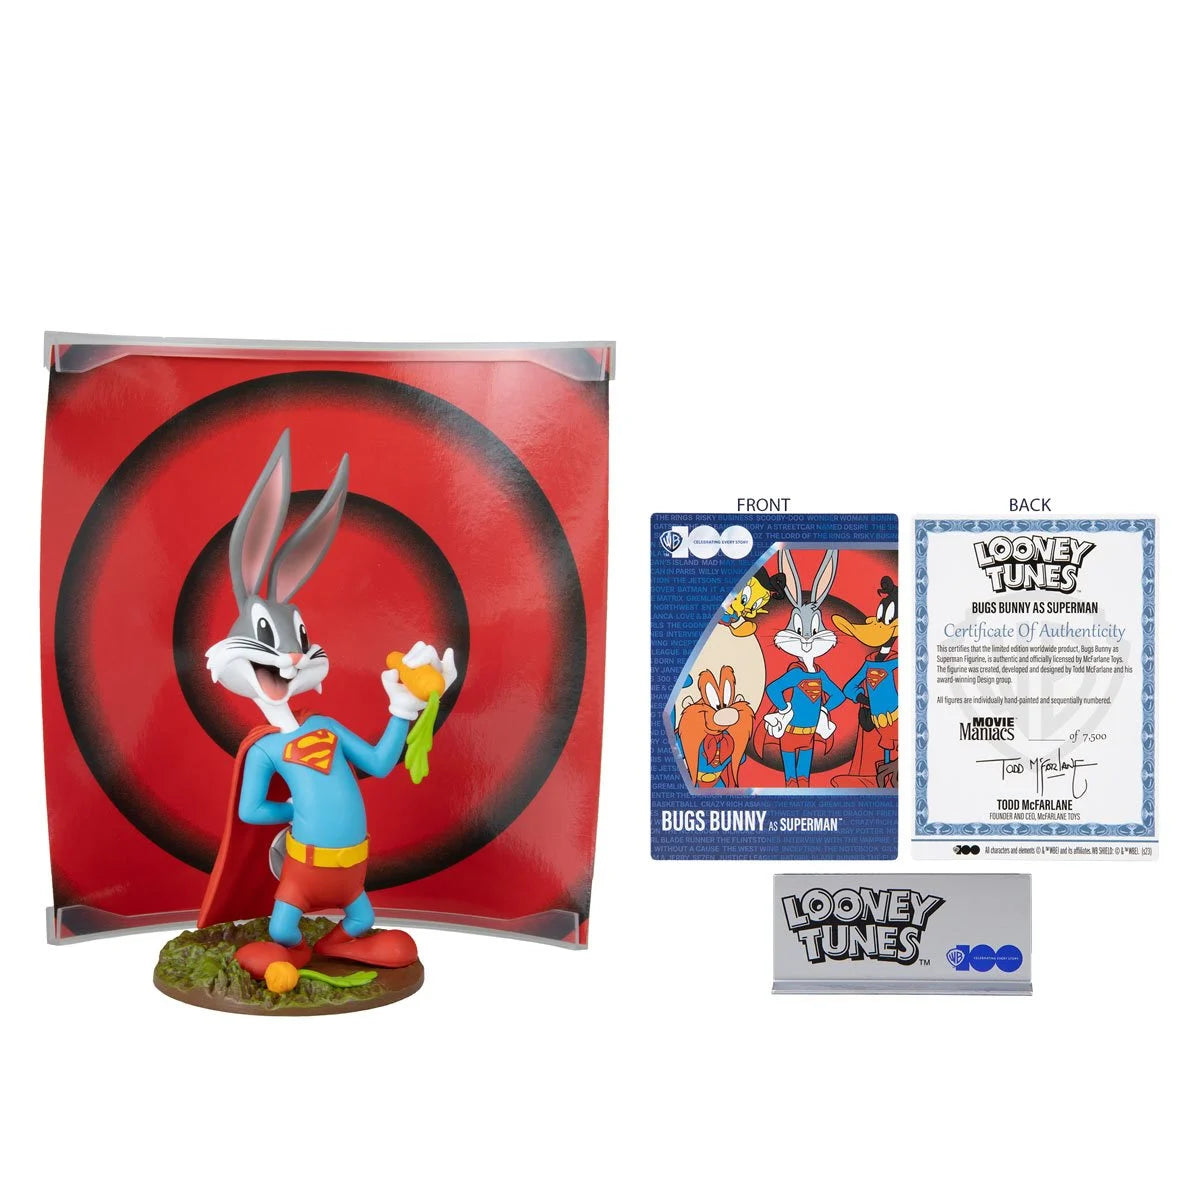 McFarlane Estatua Movie Maniacs: Warner Bros 100 Looney Tunes - Bugs Bunny Como Superman 6 Pulgadas